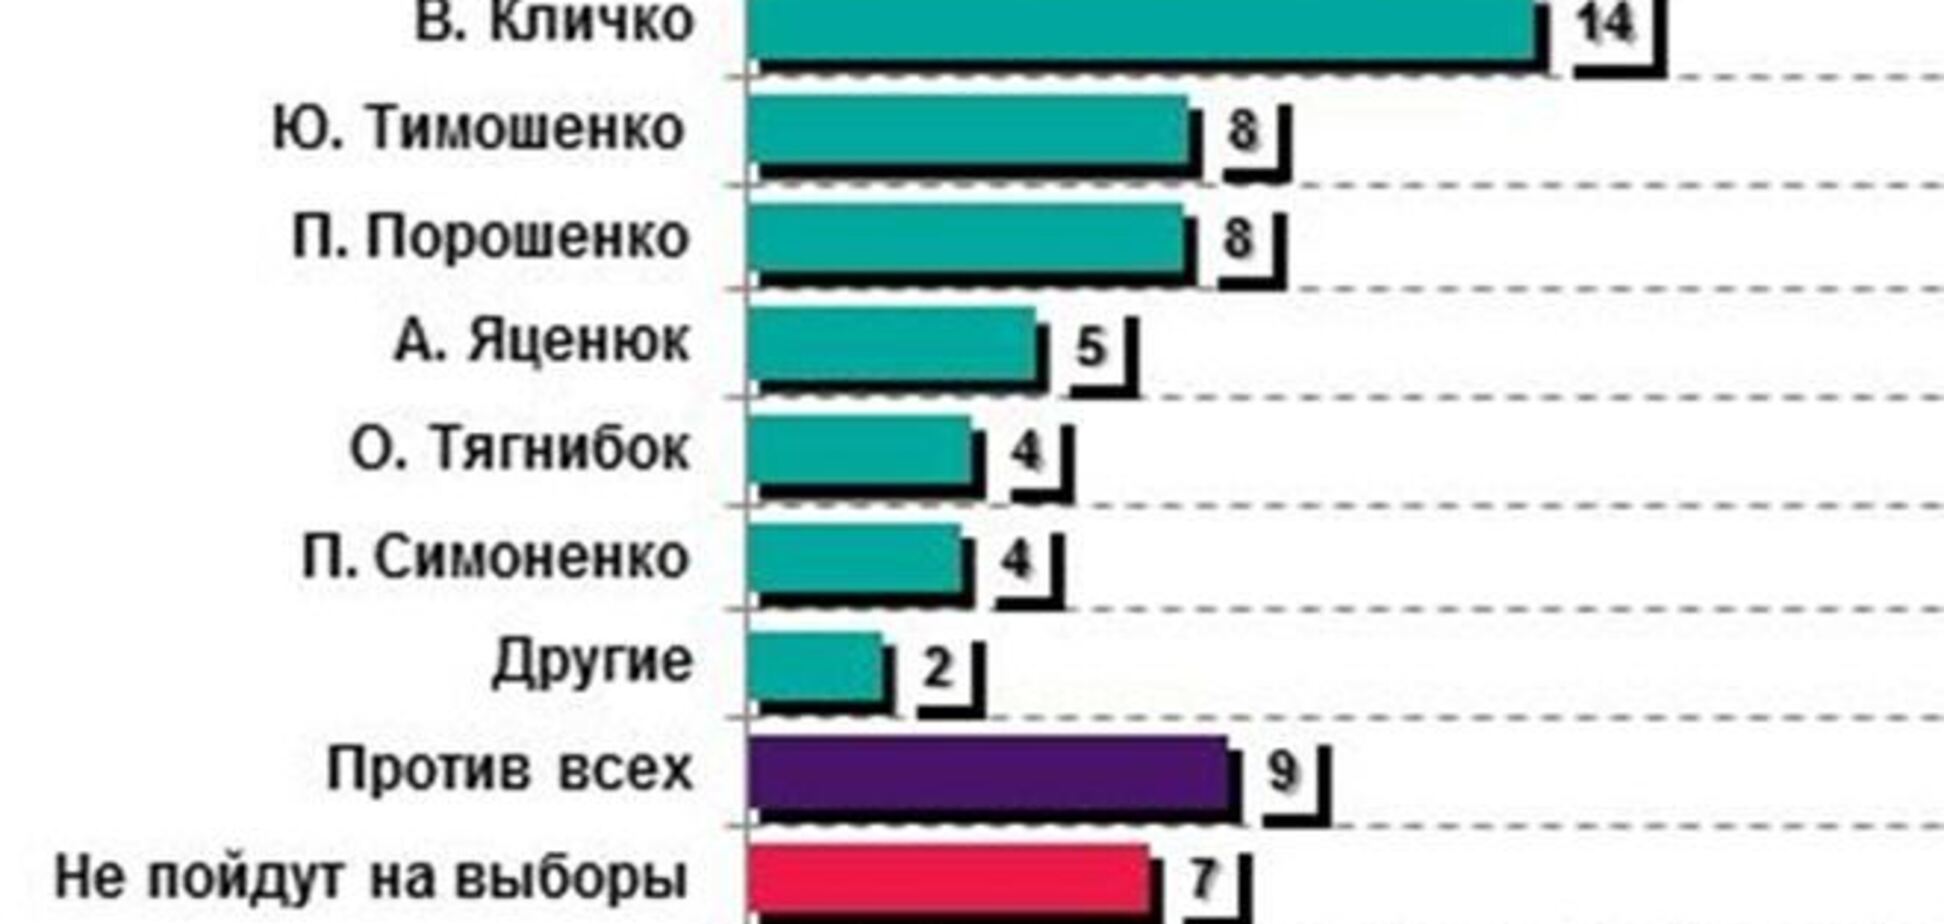 Каждый четвертый украинец готов проголосовать за Януковича - опрос